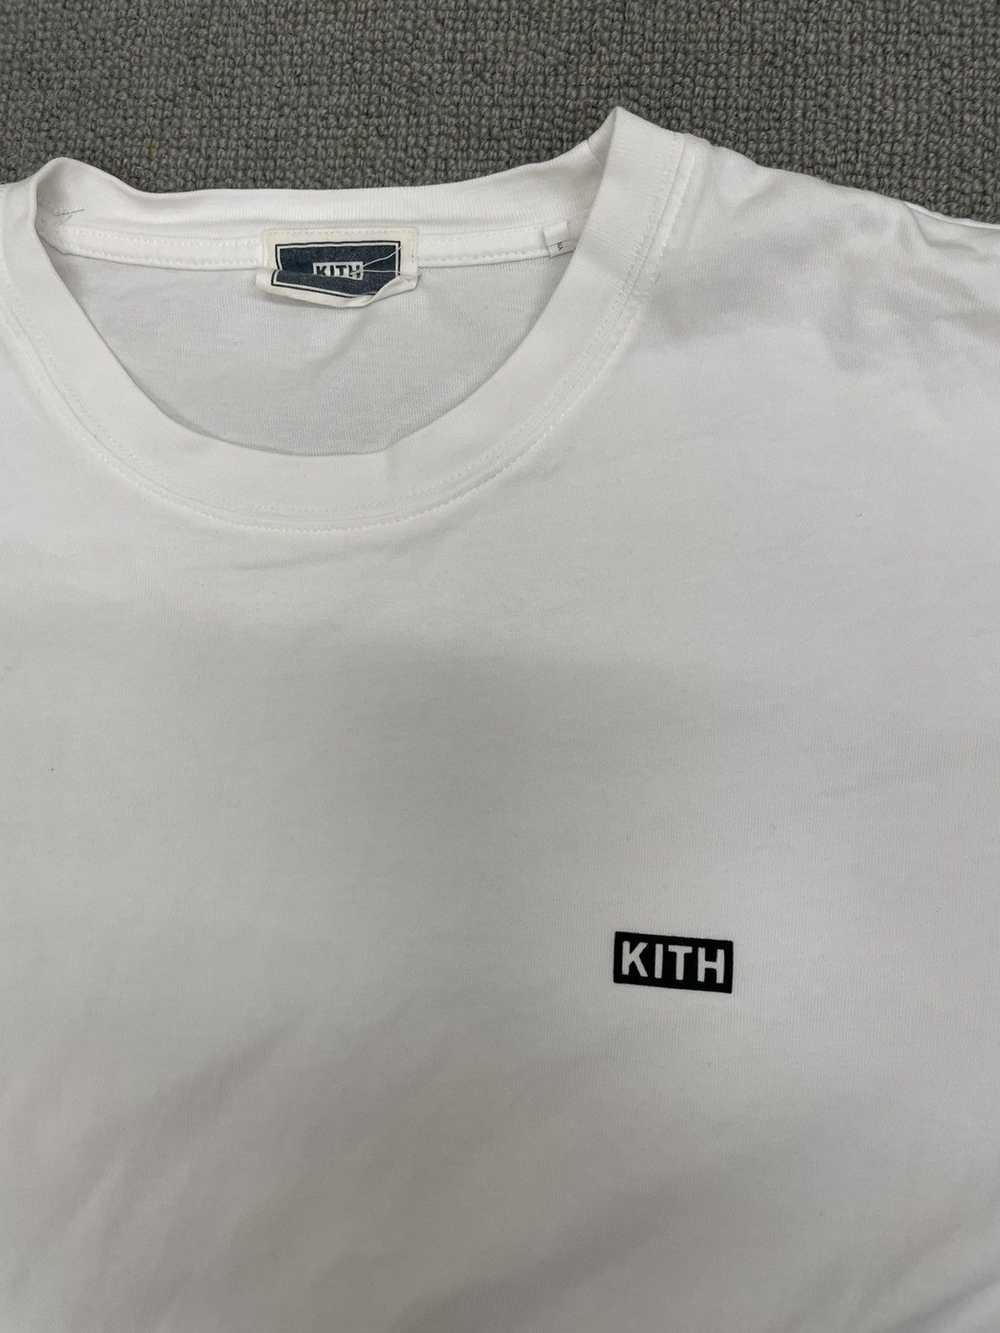 Kith Kith LAX Tee White - image 2